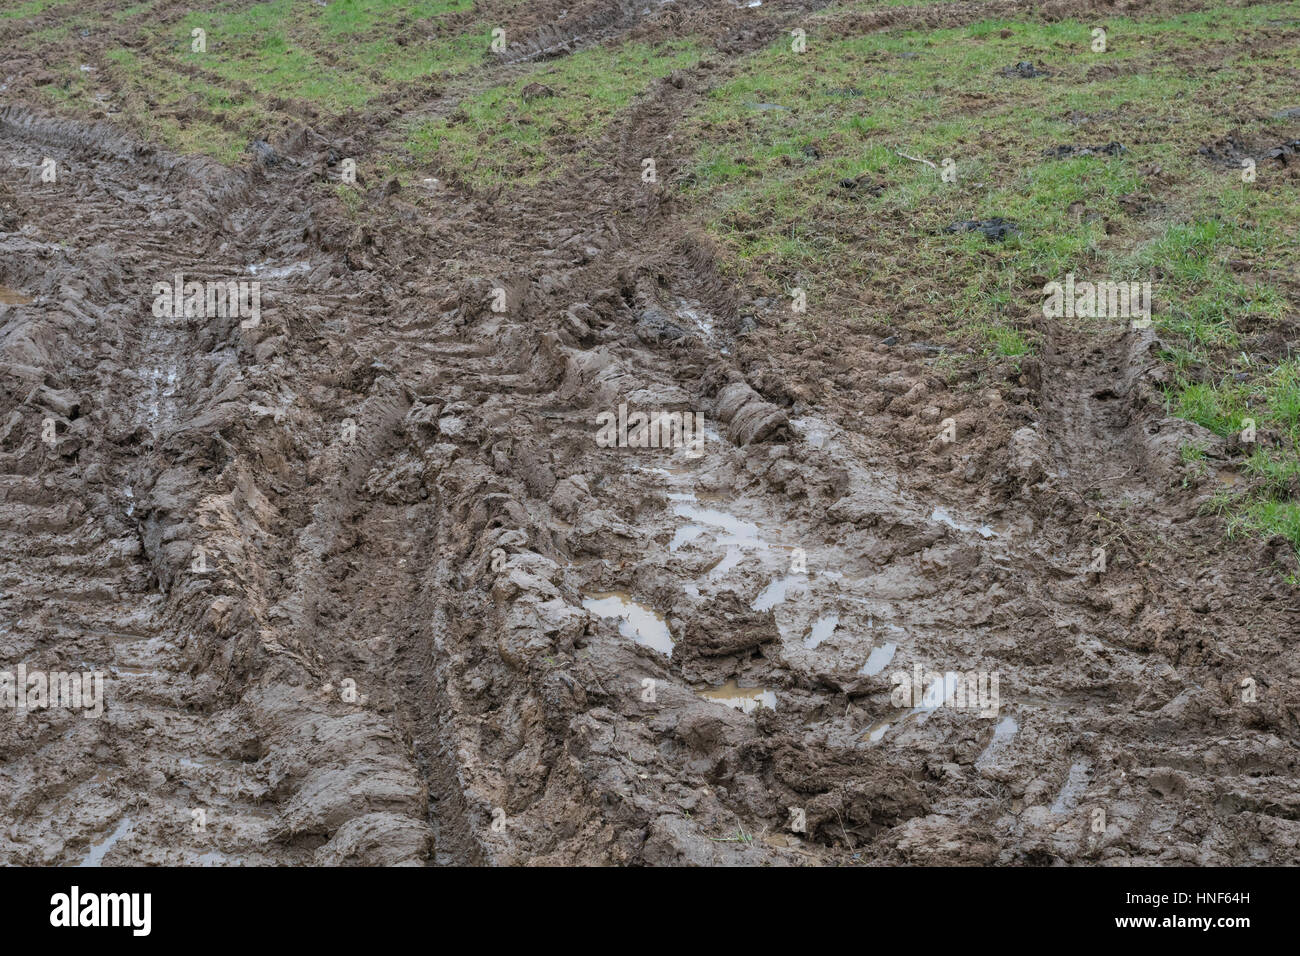 Les traces de pneus de tracteur boueux épais à l'entrée de champ / pistes sur l'herbe. Métaphore bâton dans la vase, la boue, la texture de surface boueuse, la boue, la boue de l'hiver. Banque D'Images